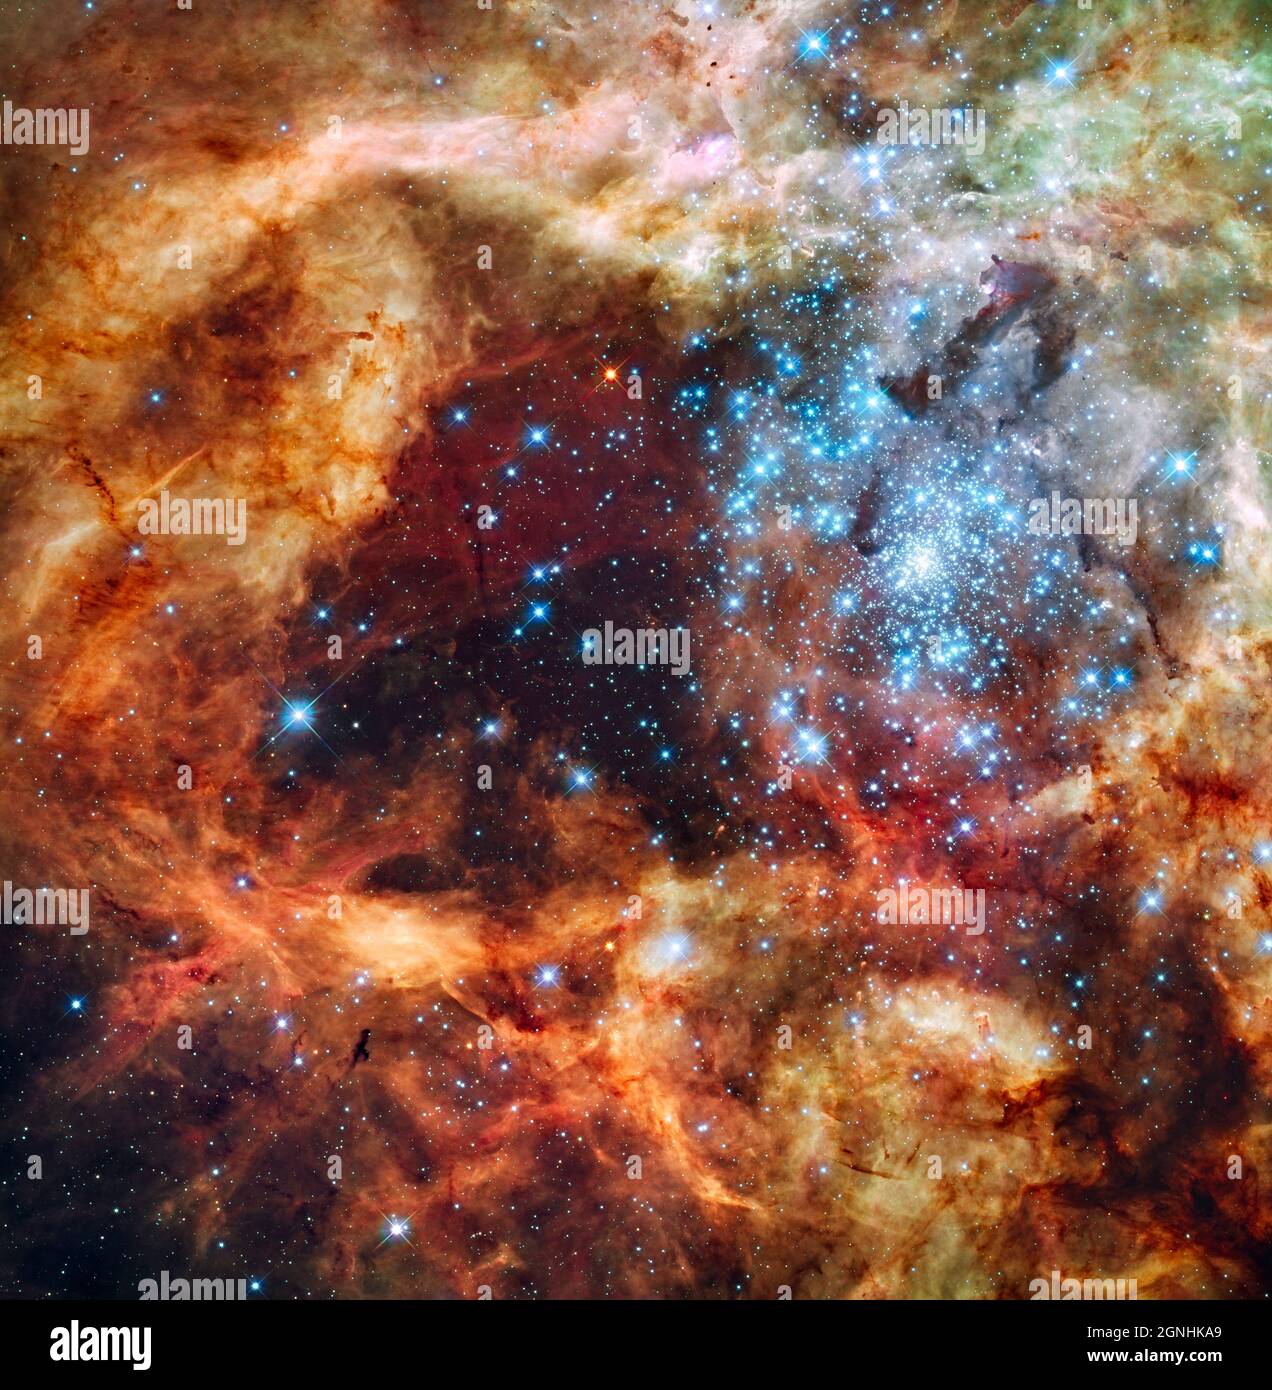 Il massiccio, giovane gruppo stellare, chiamato R136, ha solo pochi milioni di anni ed è trovato nel 30 Doradus Nebula, una turbolenta regione di nascita delle stelle nella grande nuvola Magellanica (LMC). Molte delle stelle blu ghiacciate simili a diamante sono tra le stelle più massicce conosciute. Molti di loro sono più di 100 volte più voluminosi del nostro Sole. L'immagine è circa 100 anni luce attraverso. Le stelle brillanti stanno intagliando profonde cavità nel materiale circostante liberando un torrente di luce ultravioletta, e venti stellari di forza di uragano che stanno etching via le nuvole di idrogeno avvolgenti Foto Stock